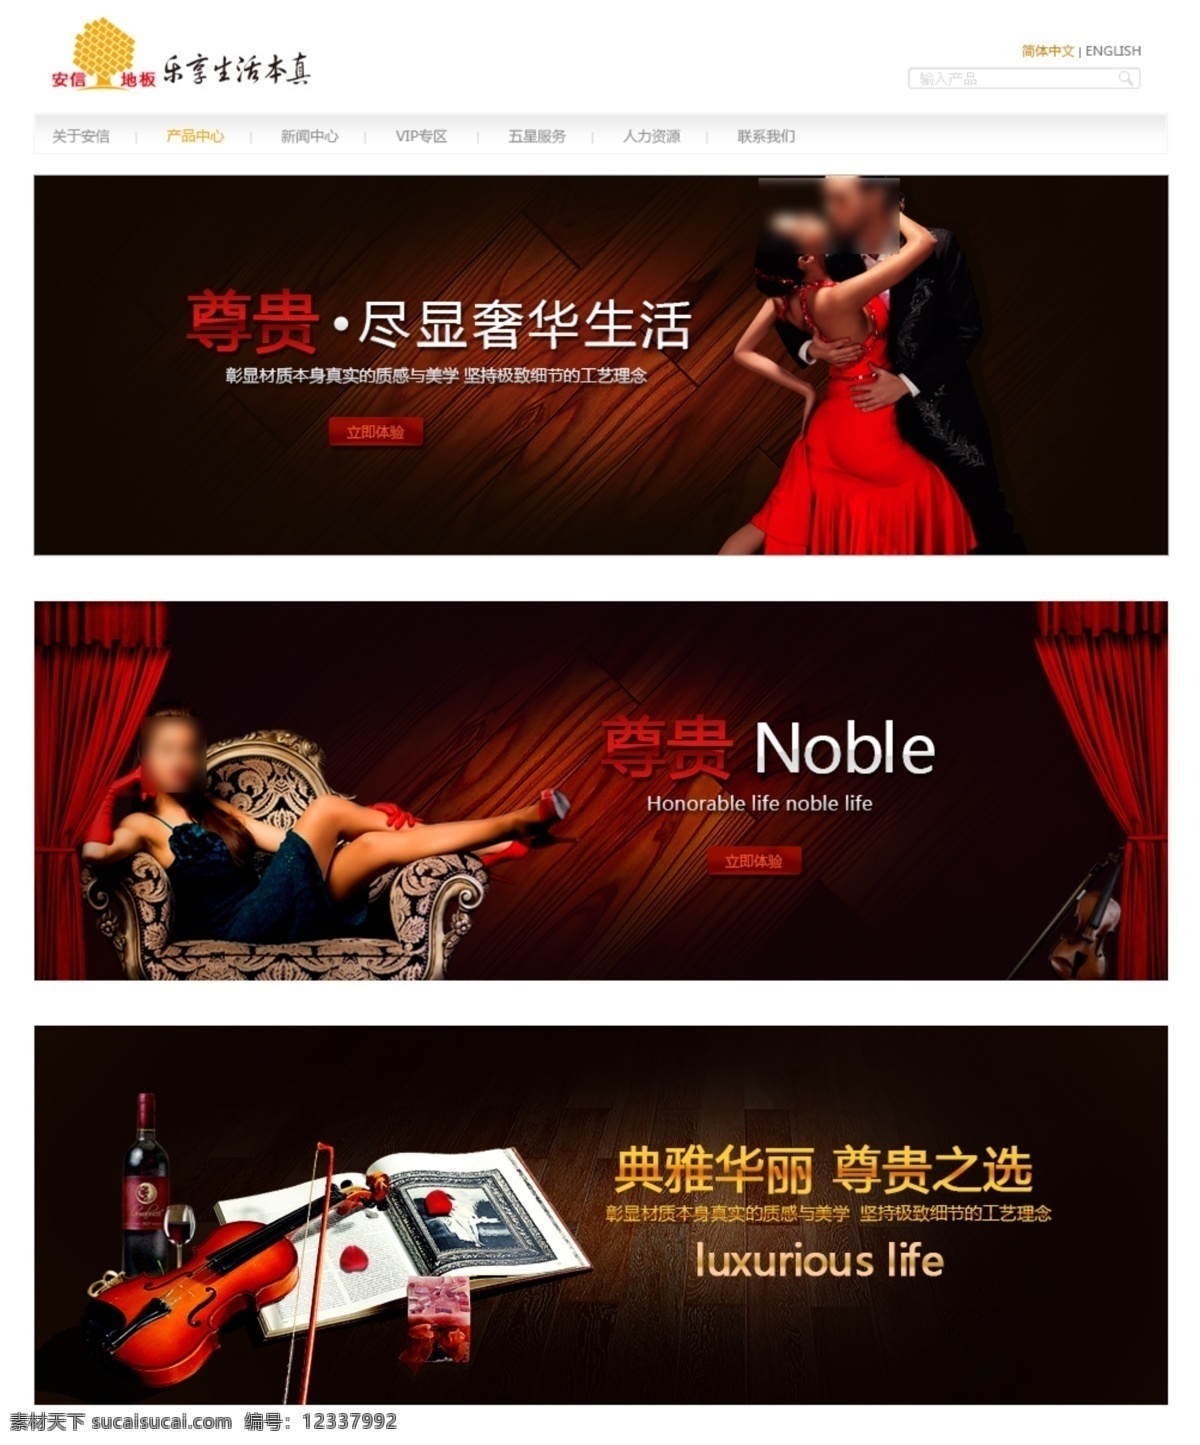 地板网页广告 地板 木地板 小提琴 典雅华丽 尊贵之选 幕布 红酒 跳舞 奢华生活 美女 web 界面设计 中文模板